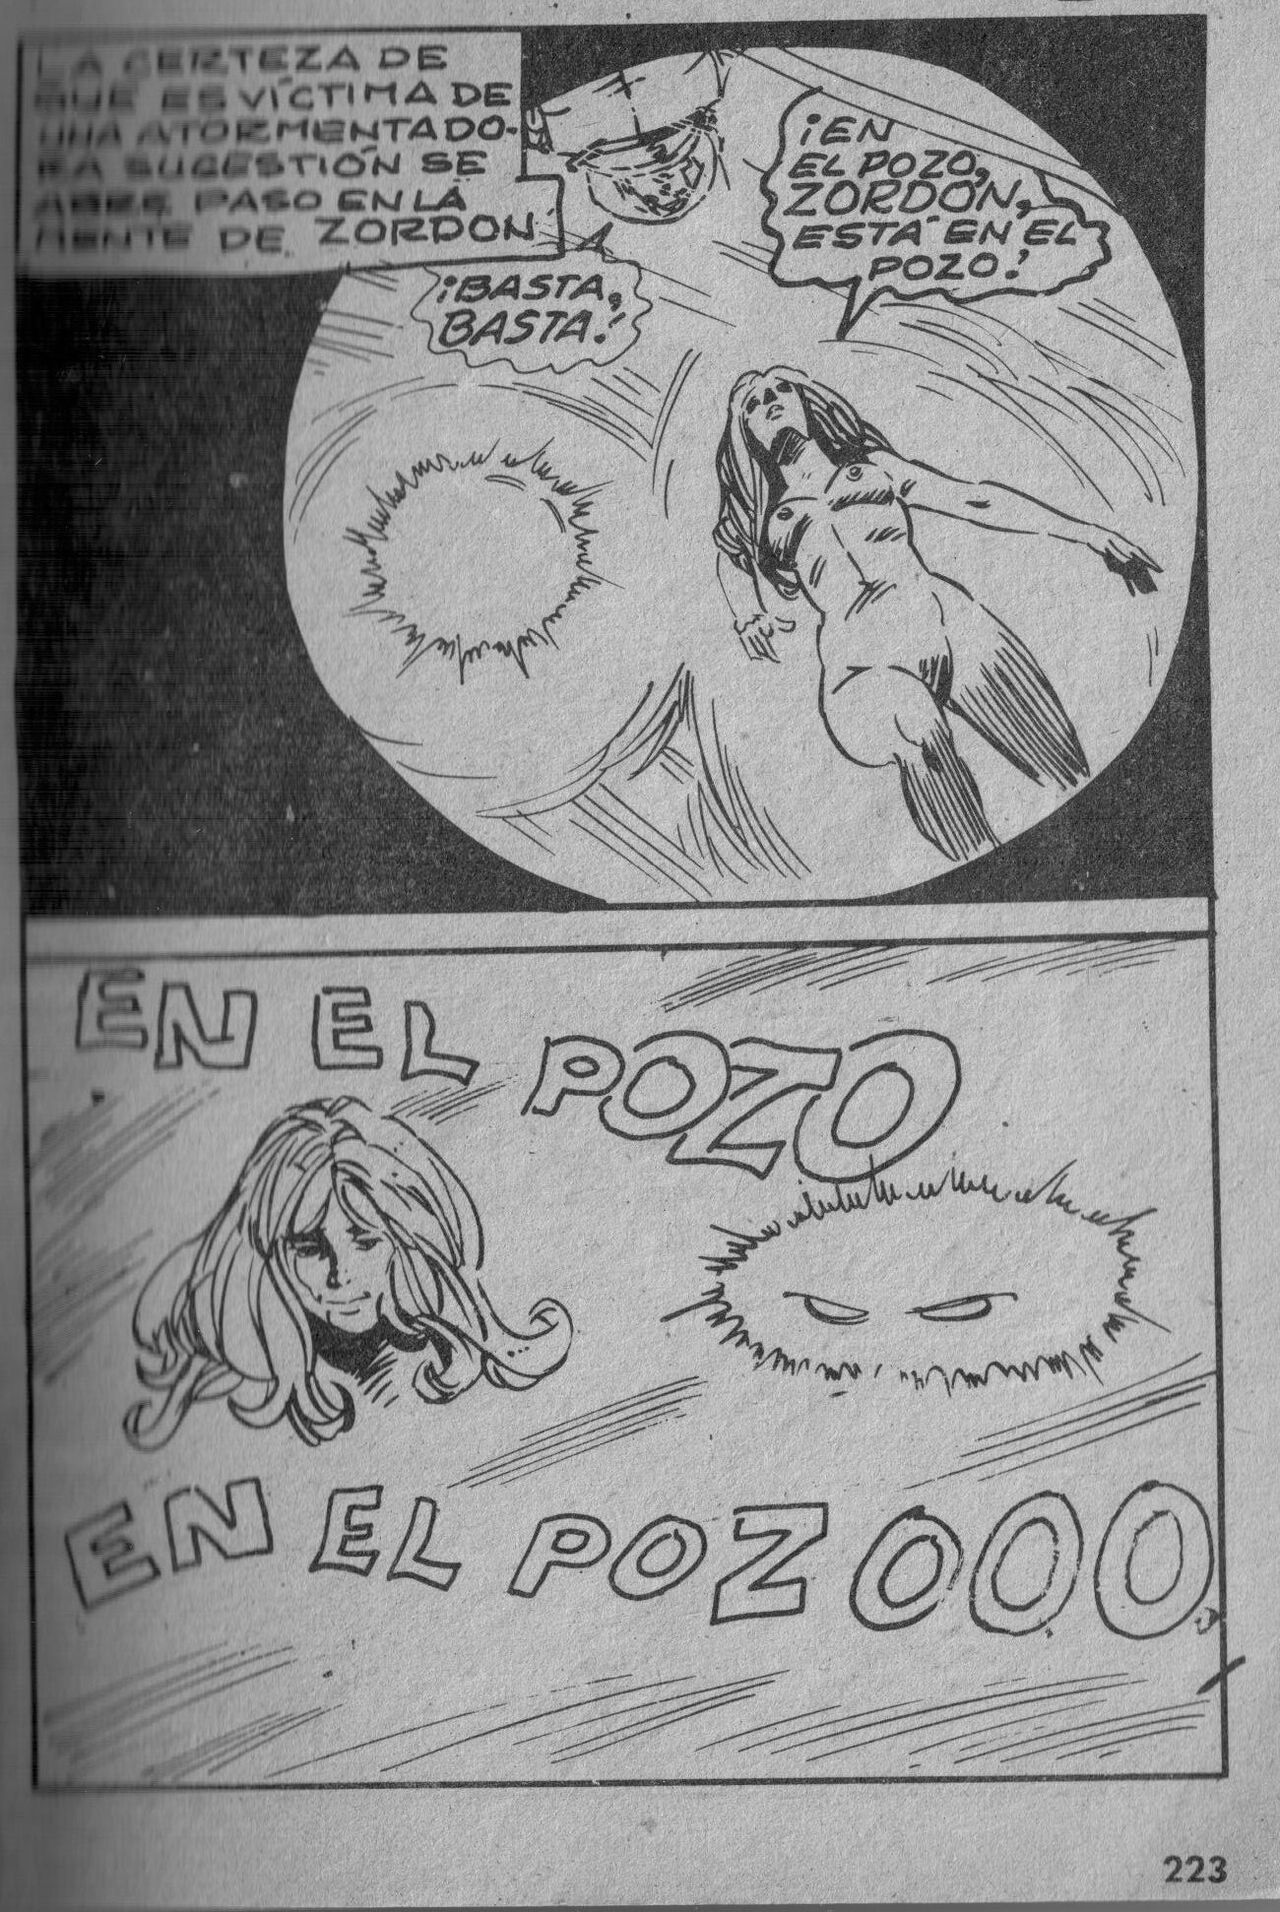 [Mercocomic] Zordon #12 [Spanish] 225